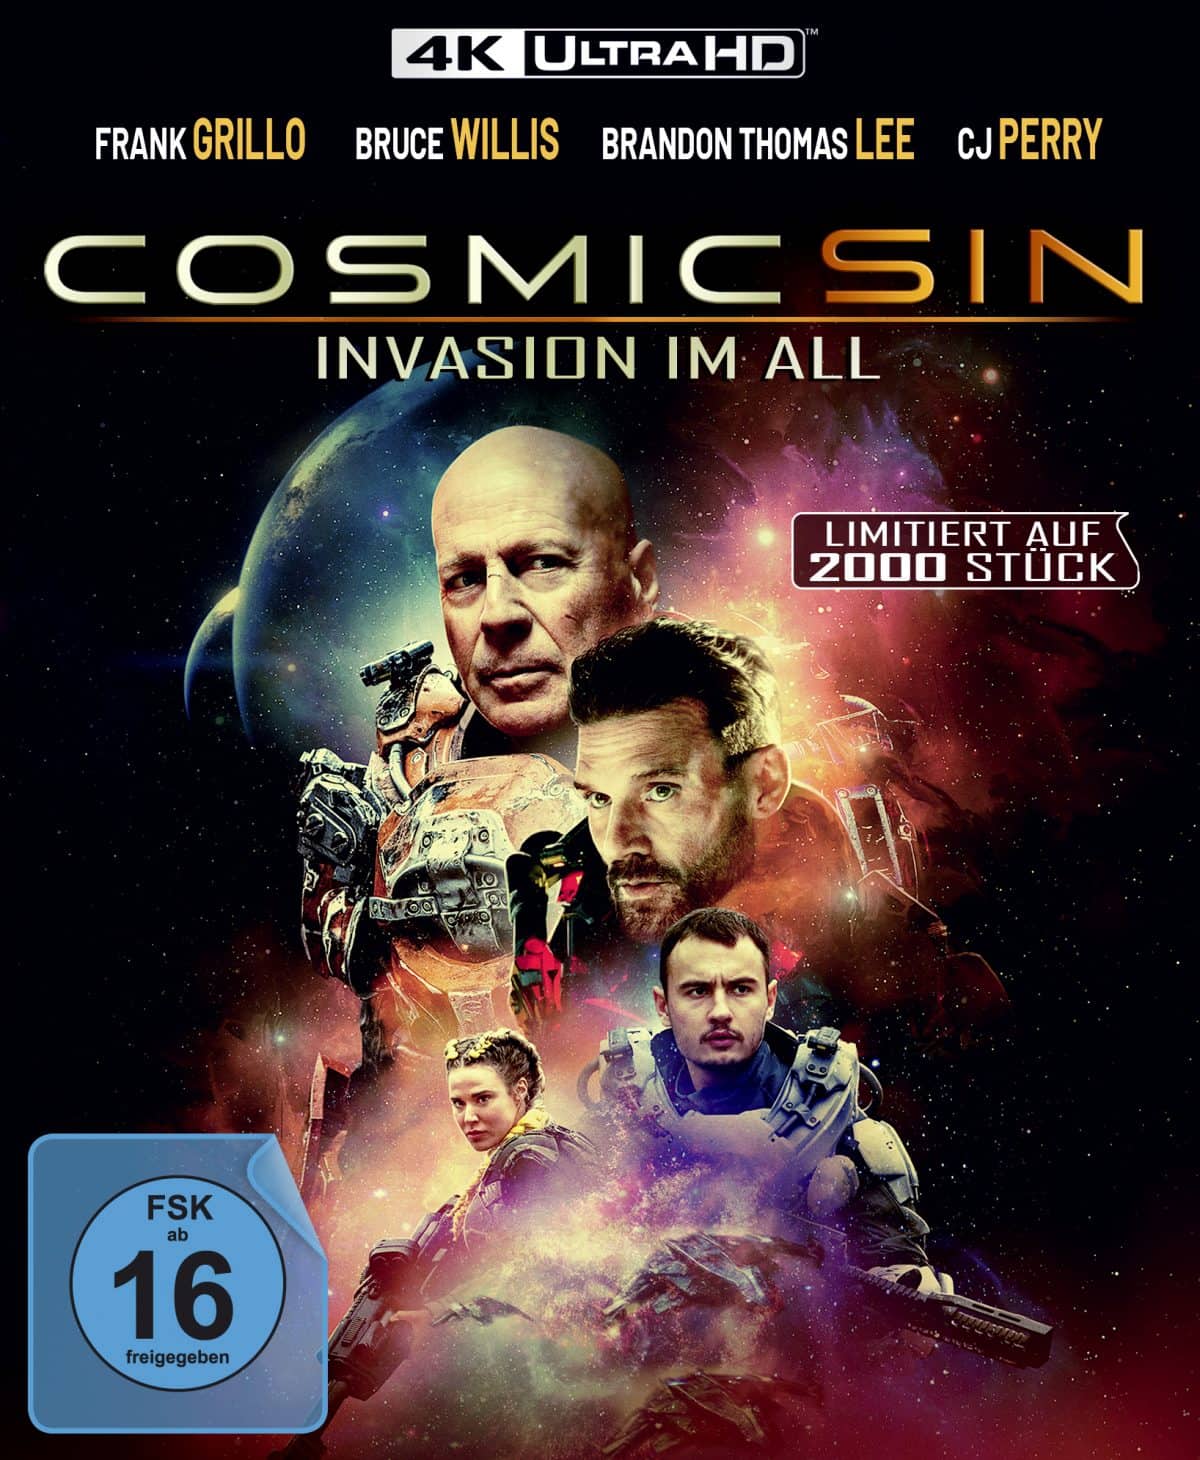 Ab dem 13. Mai 2021 erscheint COSMIC SIN mit Bruce Willis als DVD, Blu-ray und 4K Blu-ray als „Limited Edition“ (2.000 Stück) bei Dolphin Medien im exklusiven Vertrieb von Koch Films. Der EST ist bereits am 29.04.2021.